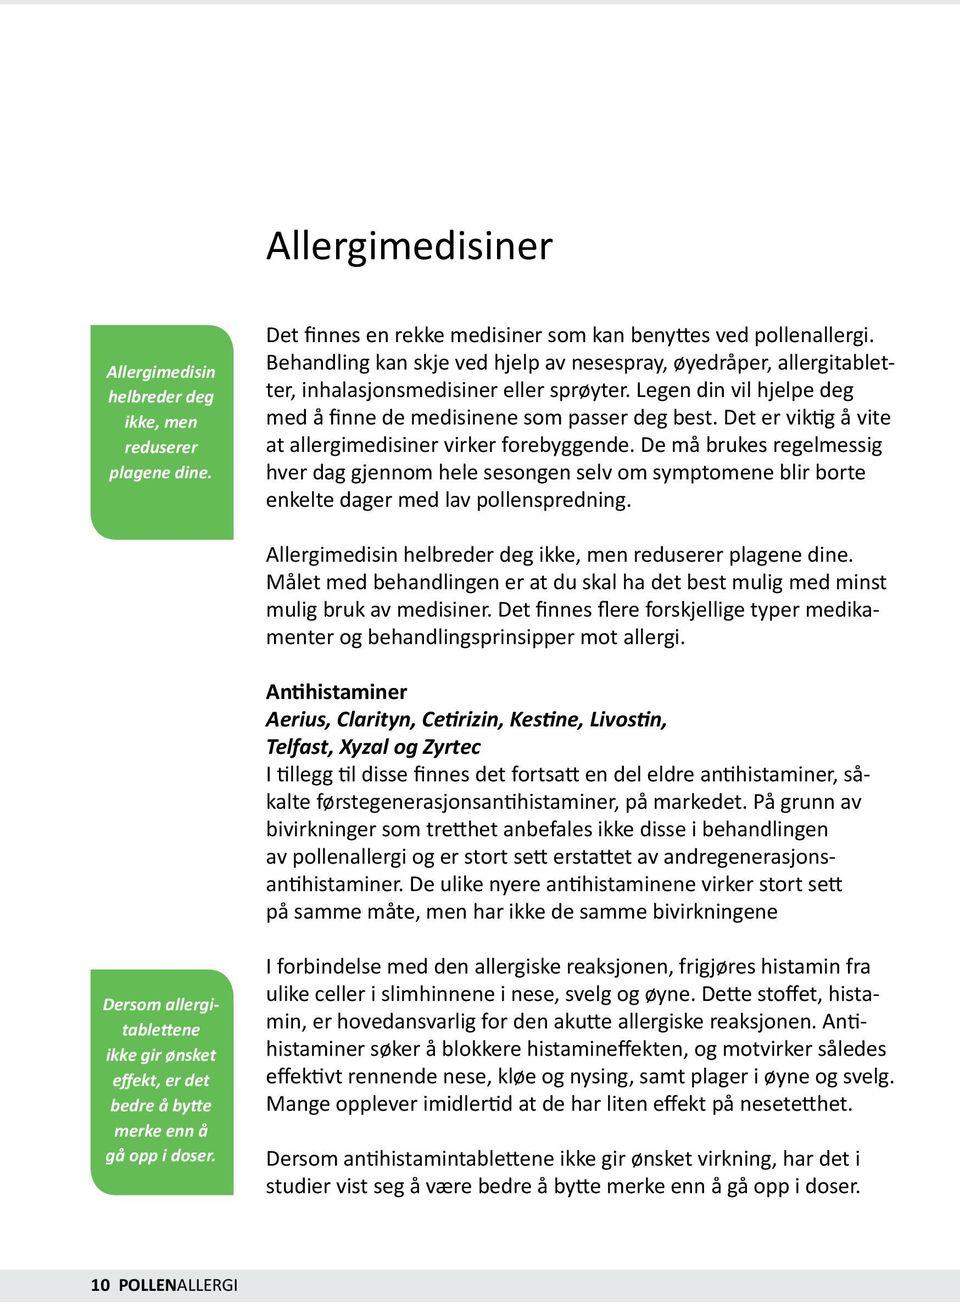 Det er viktig å vite at allergimedisiner virker forebyggende. De må brukes regelmessig hver dag gjennom hele sesongen selv om symptomene blir borte enkelte dager med lav pollenspredning.